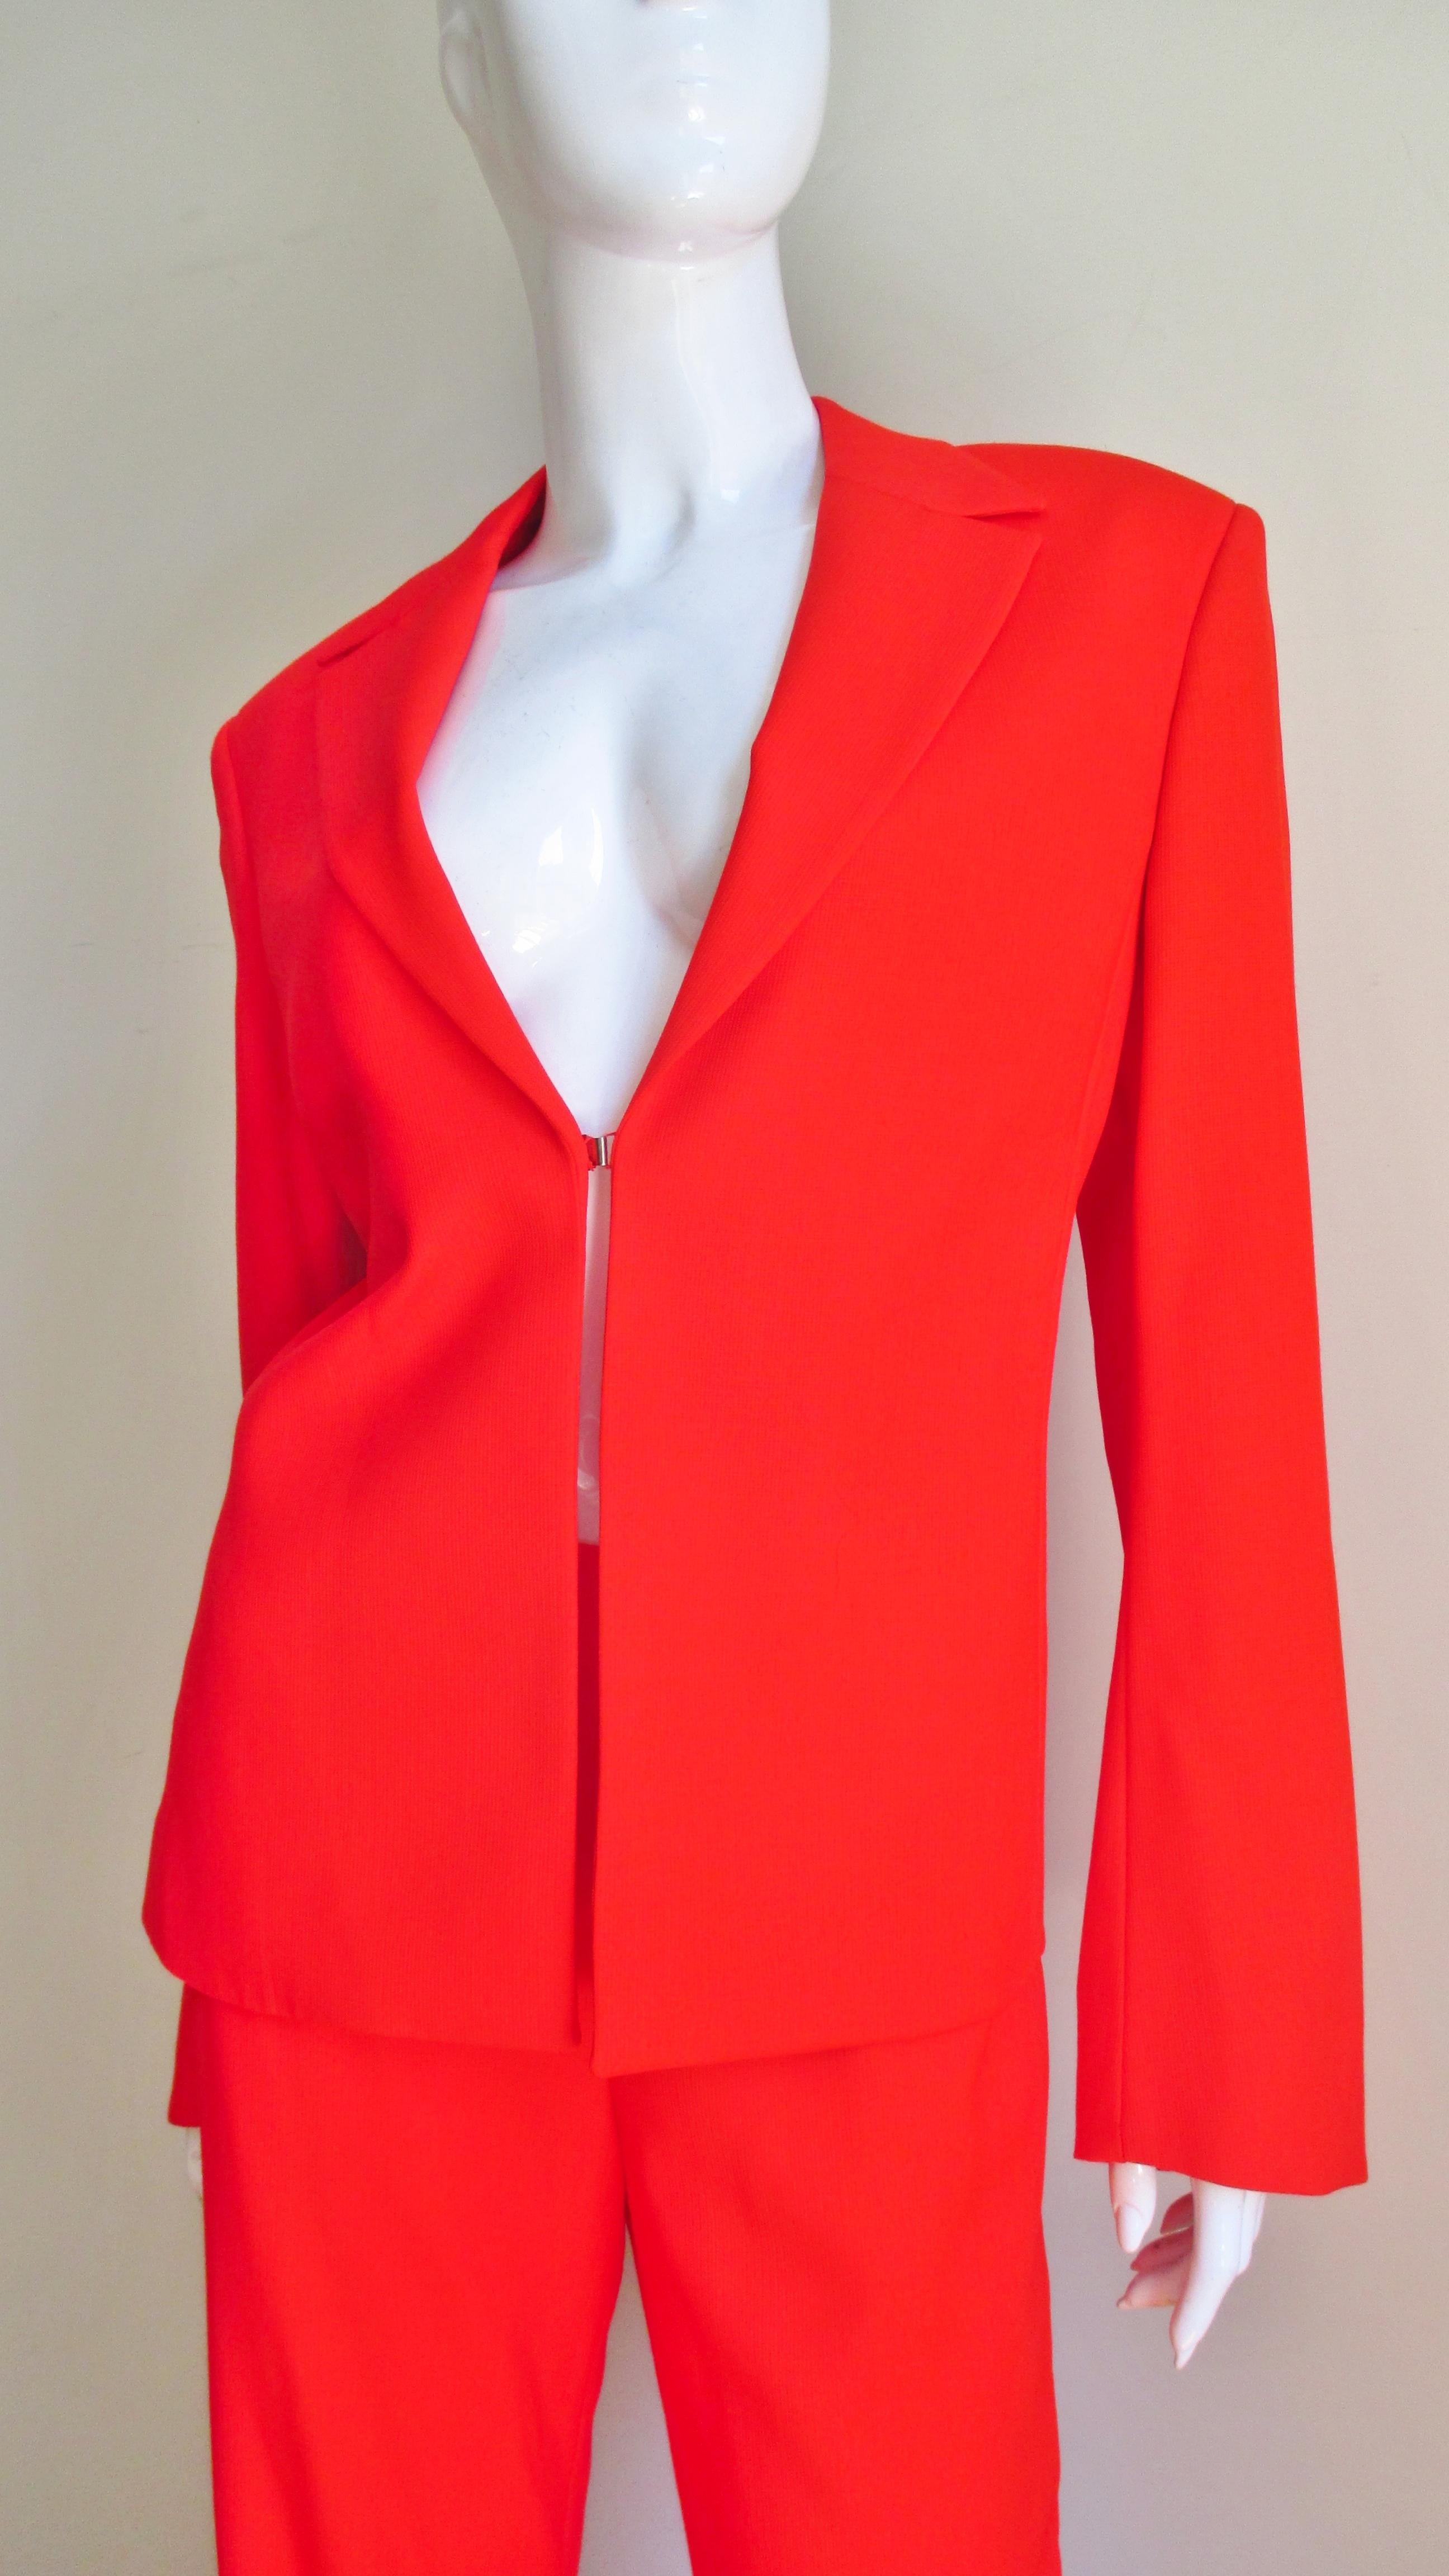 Ein wunderschöner orangefarbener, leichter Wollanzug von Gianni Versace Couture.  Die Reversjacke hat einen Hakenverschluss vorne und leicht gepolsterte Schultern.  Die Hose mit geradem Bein und mittlerer Leibhöhe hat 2 schmale, geschwungene,